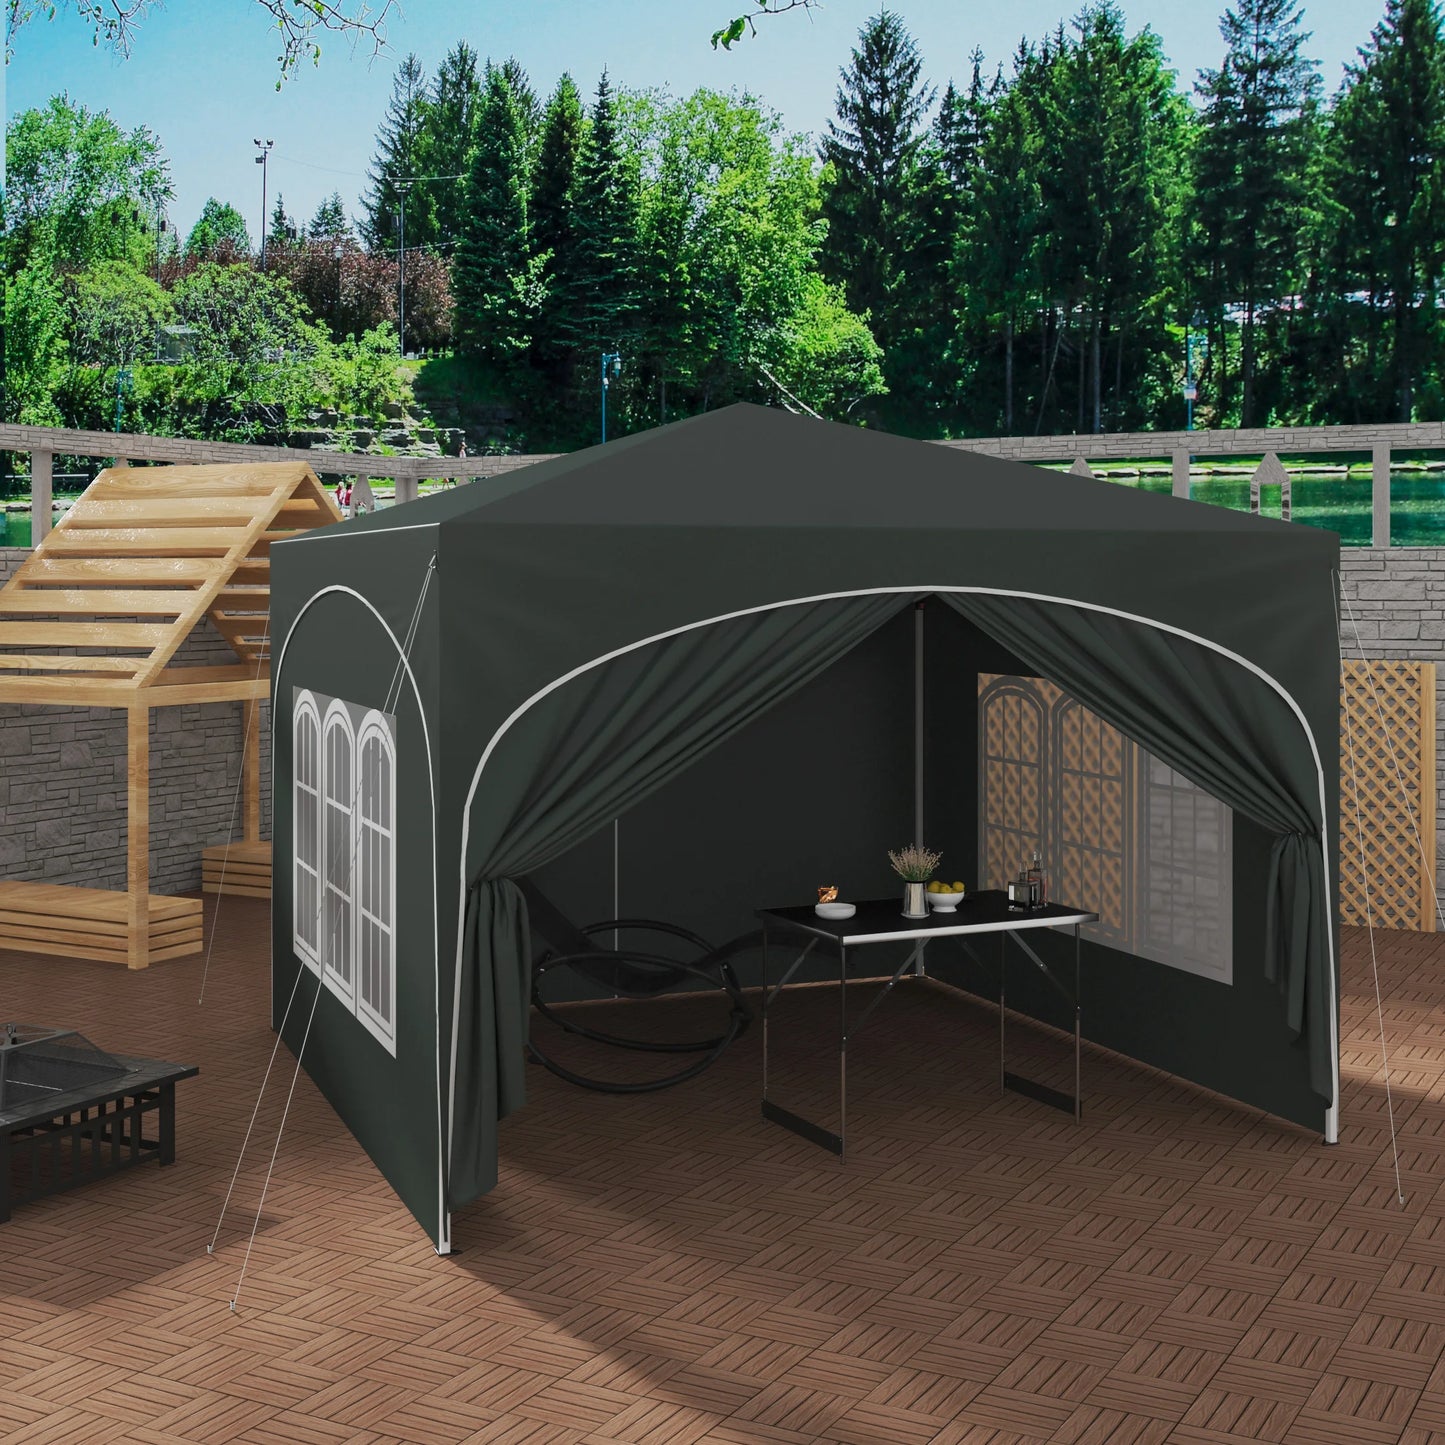 Faltbarer Pavillon mit 4 Seitenwänden 3x3m - Partyzelt mit Wasserabweisendem UV-Schutz, Höhenverstellbar für Garten, Camping, Picknick - Unique Outlet